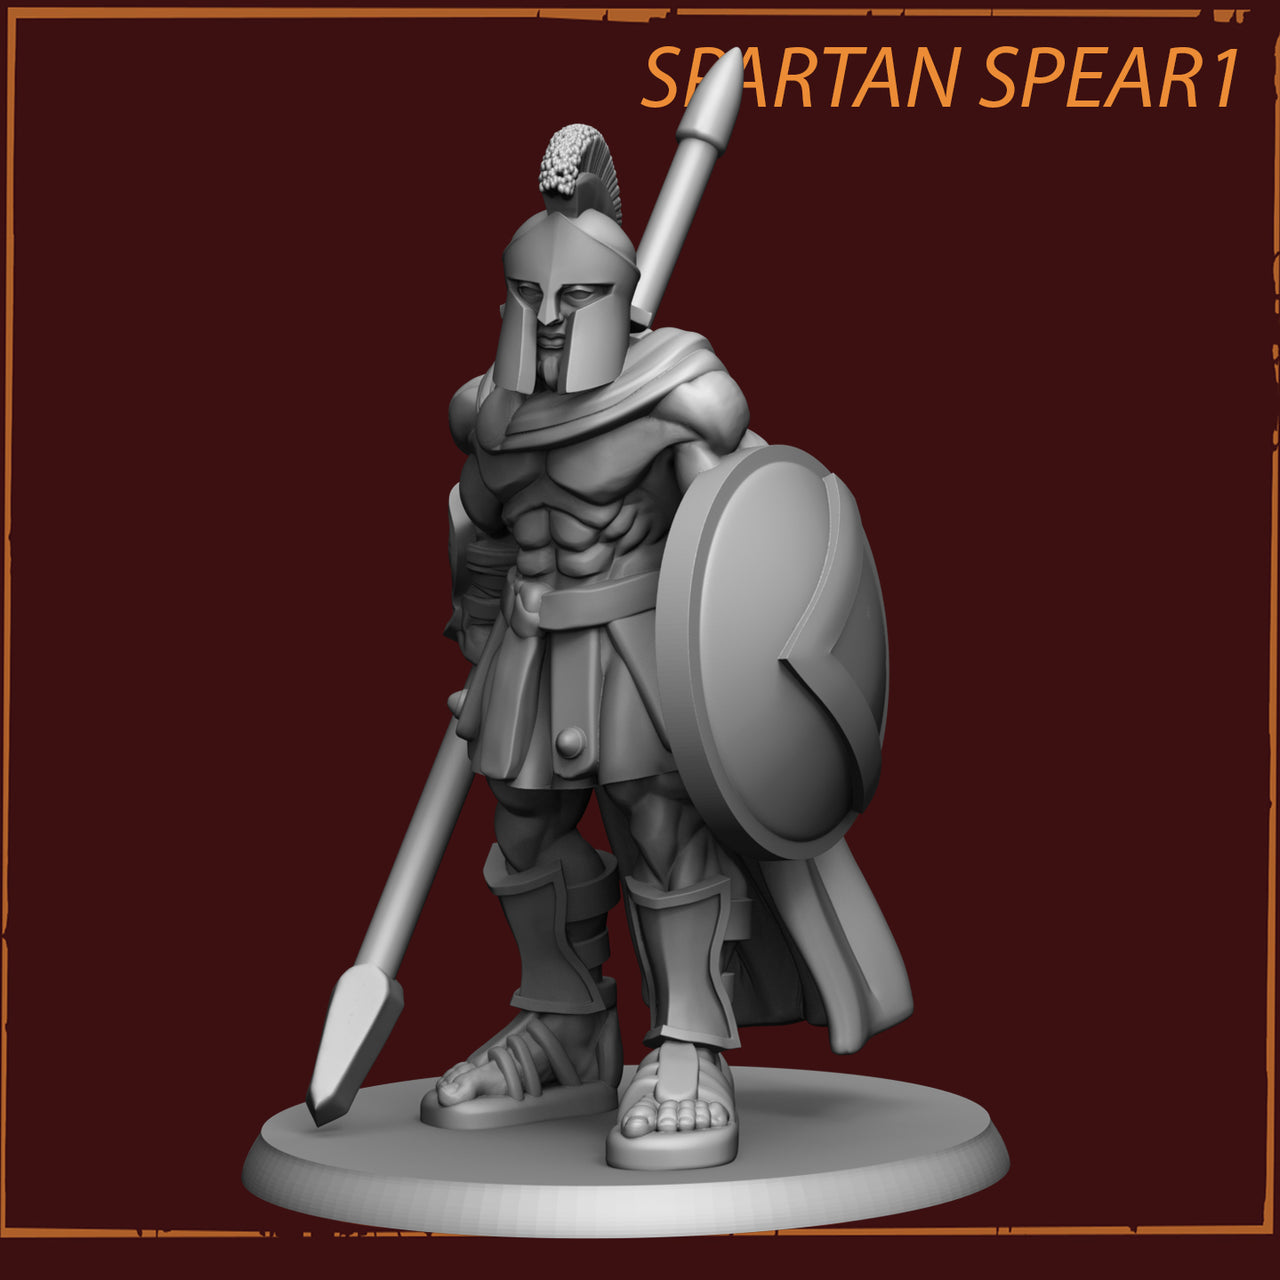 Spartan Spearman Bundle